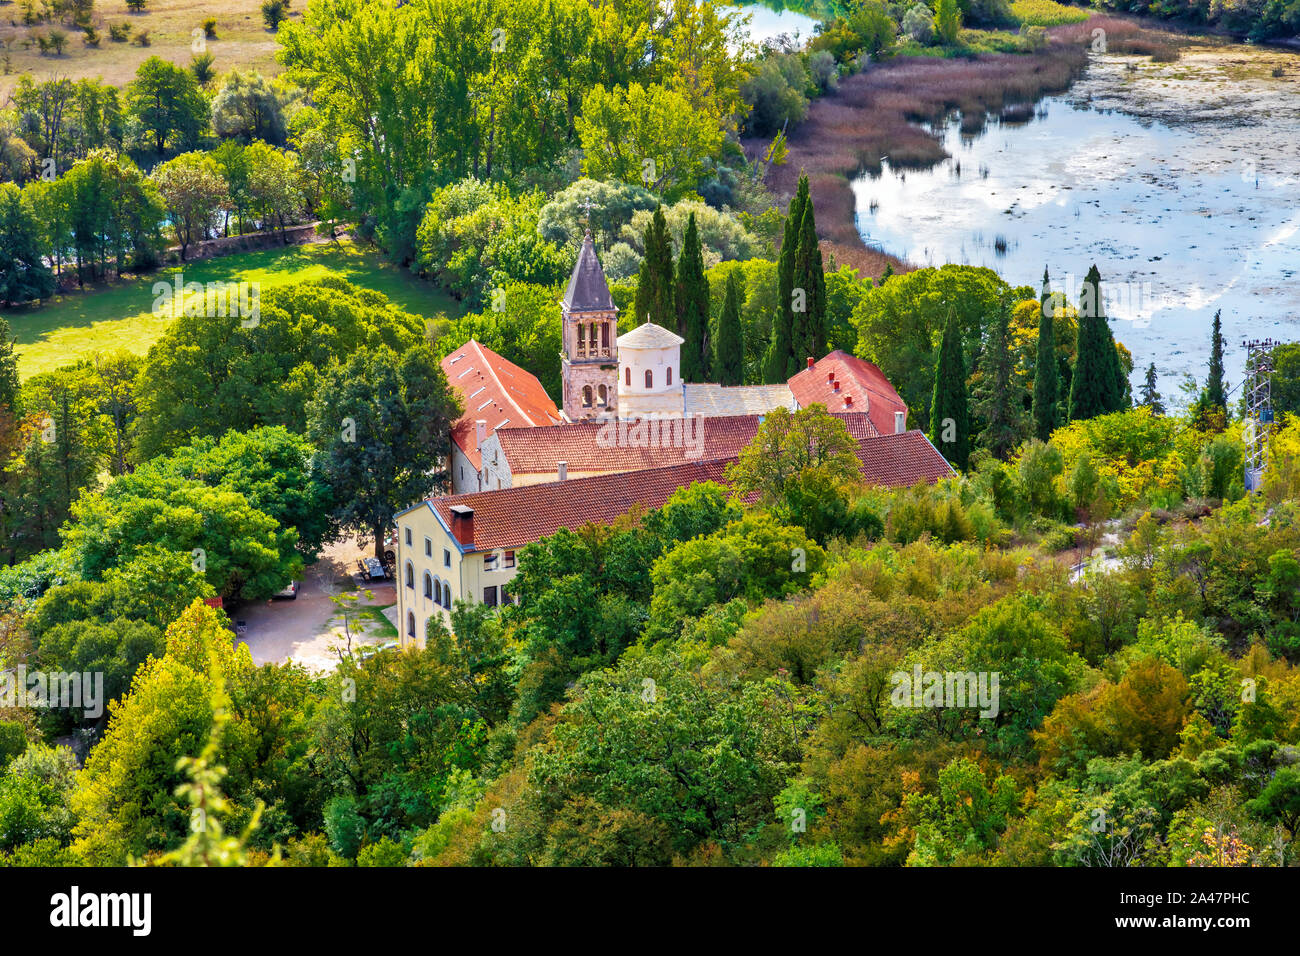 Il monastero Krka. Il XIV secolo Chiesa Ortodossa Serba monastero dedicato a San Michele Arcangelo. Situato nel Parco Nazionale di Krka, Croazia. Immagine Foto Stock